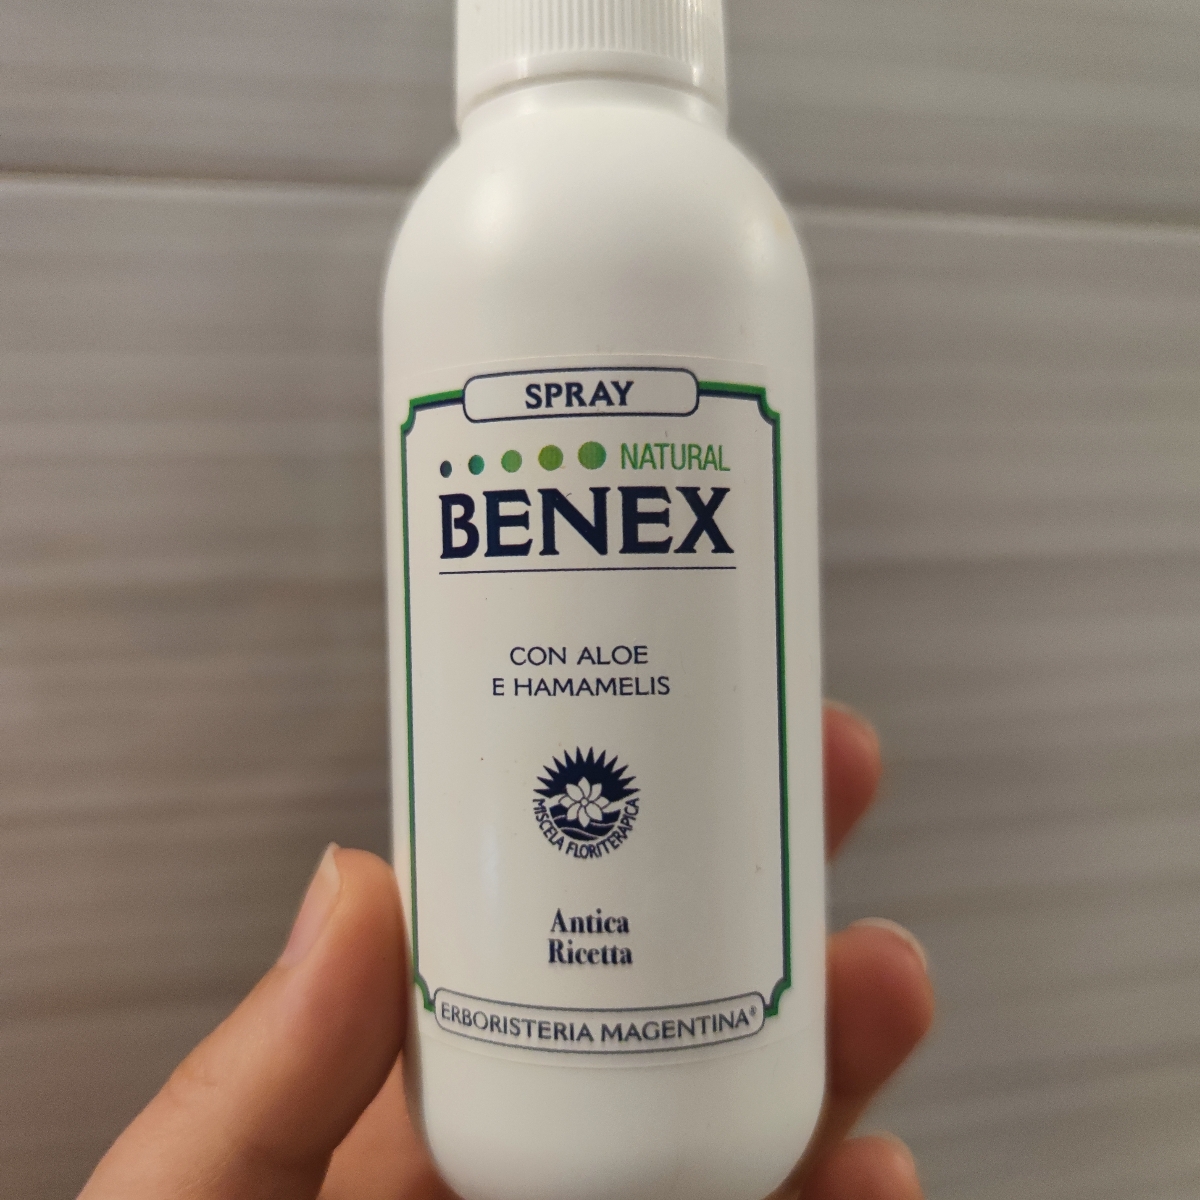 Erboristeria magentina Spray freddo Benex Reviews | abillion